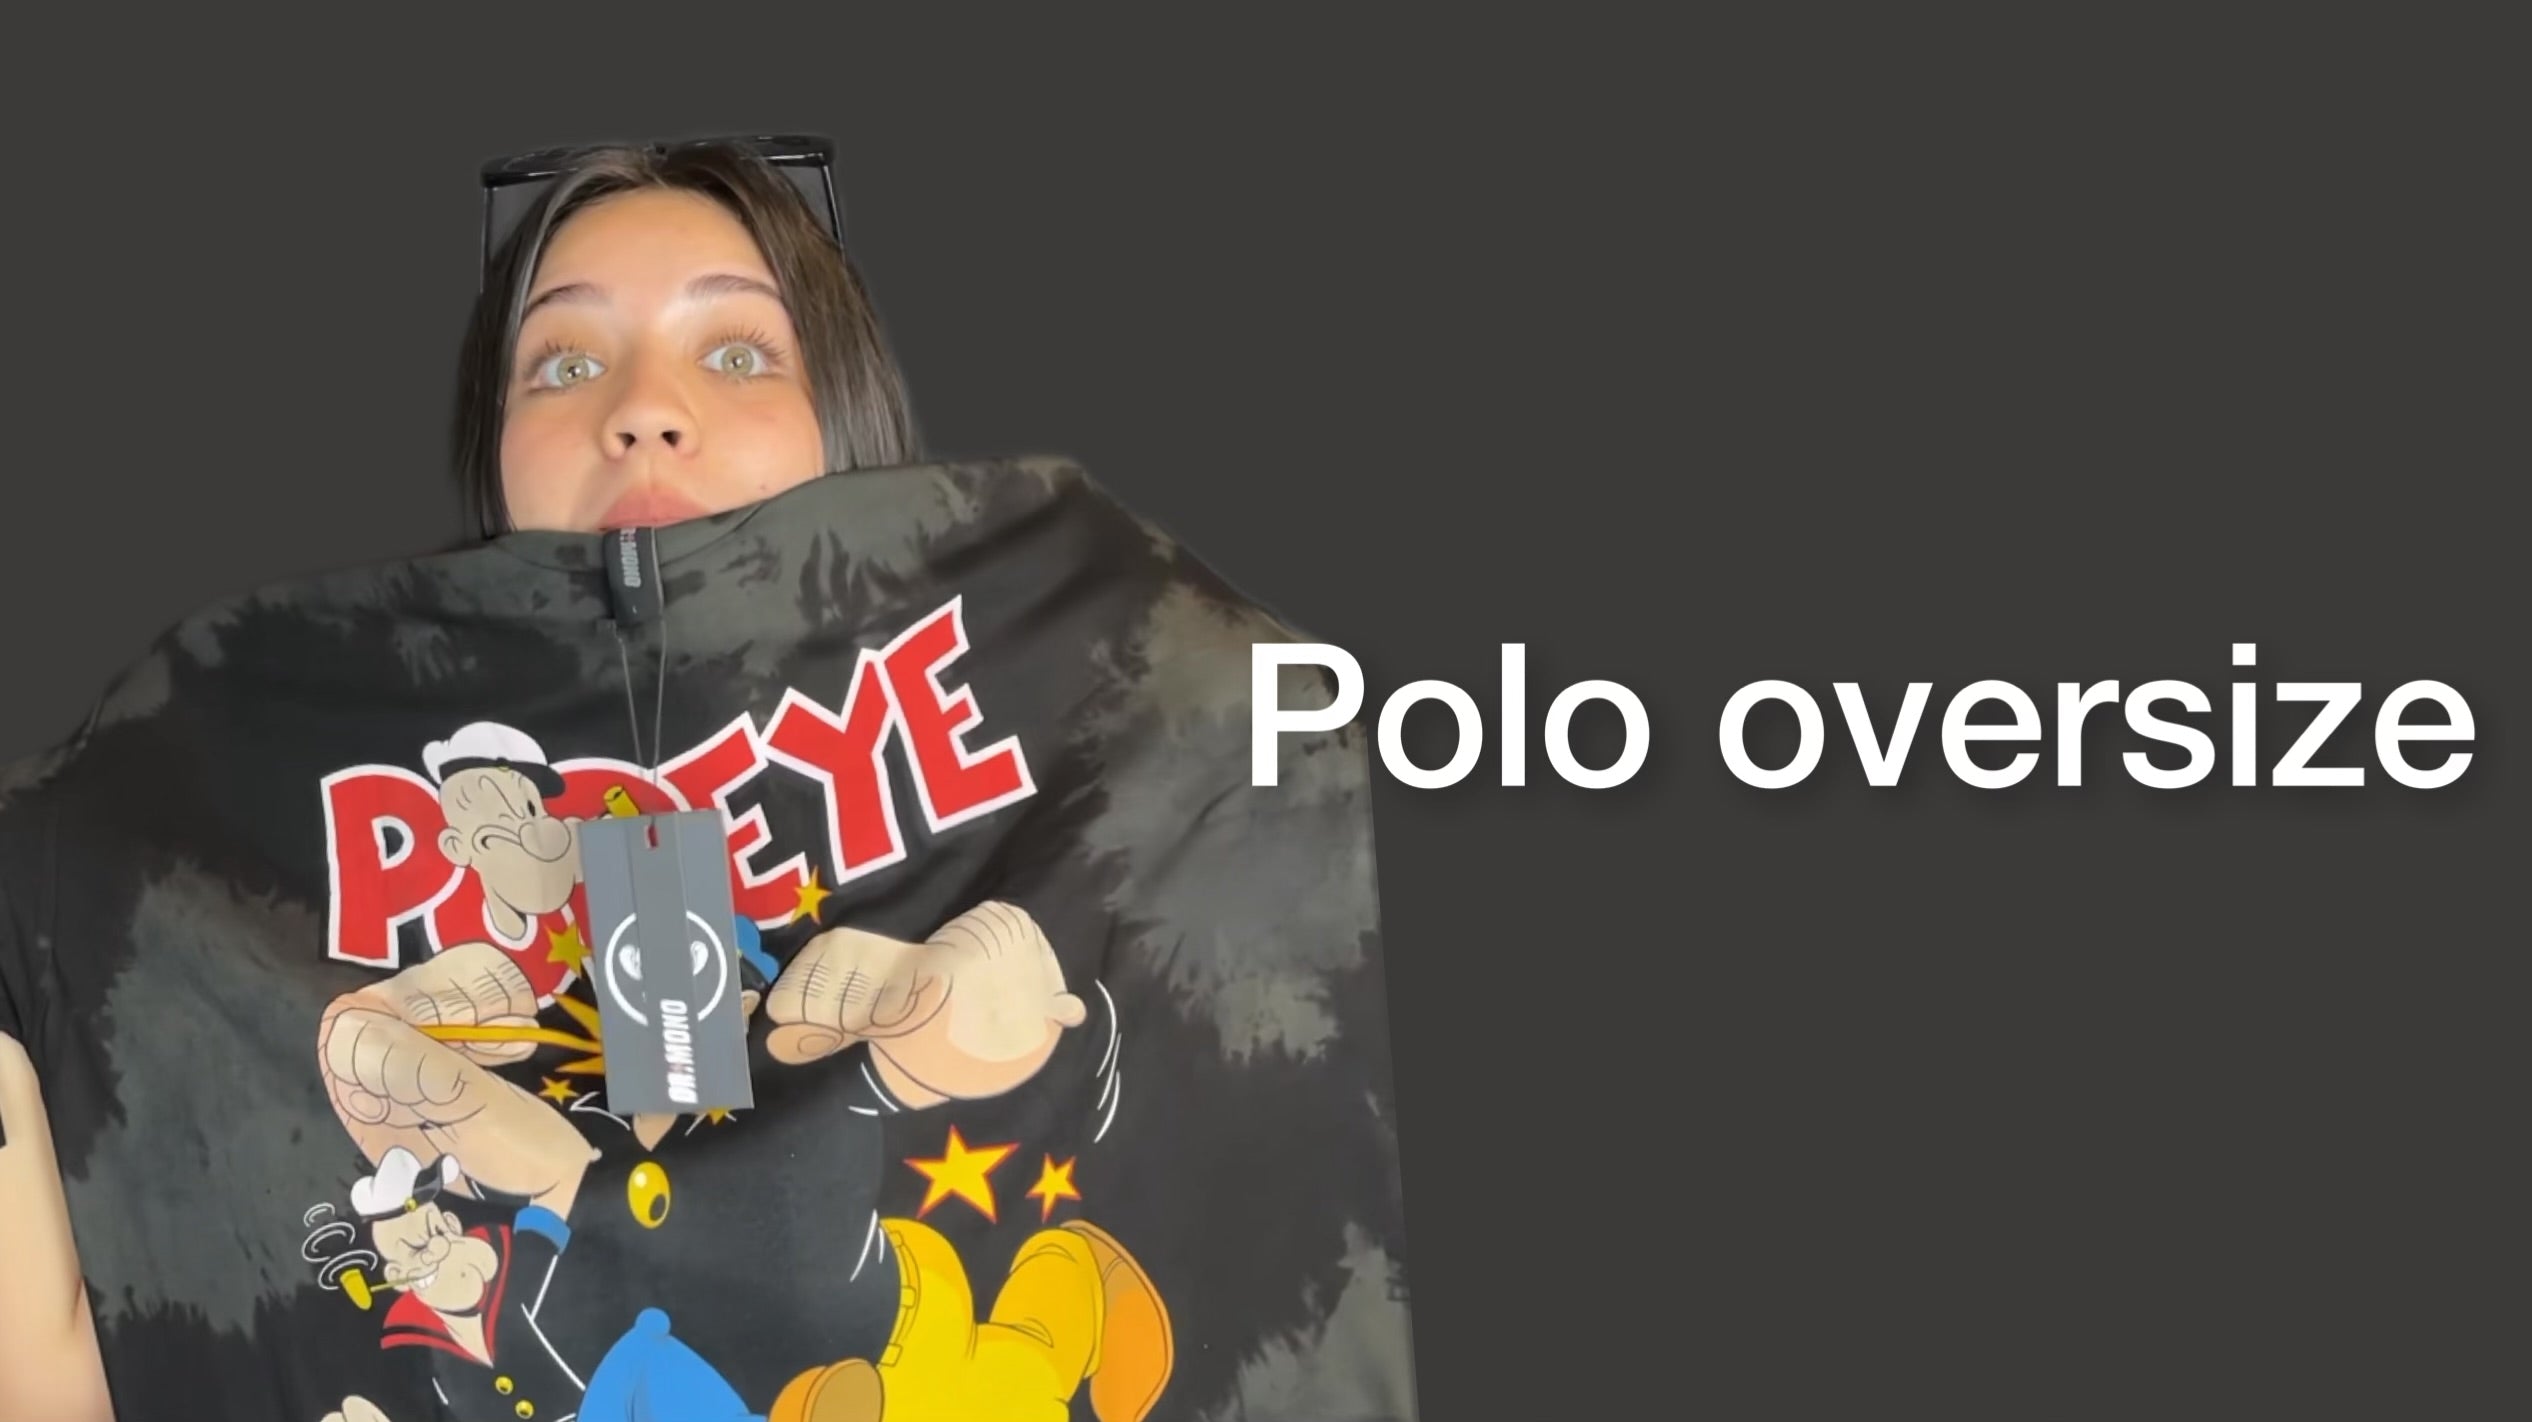 Polo oversize